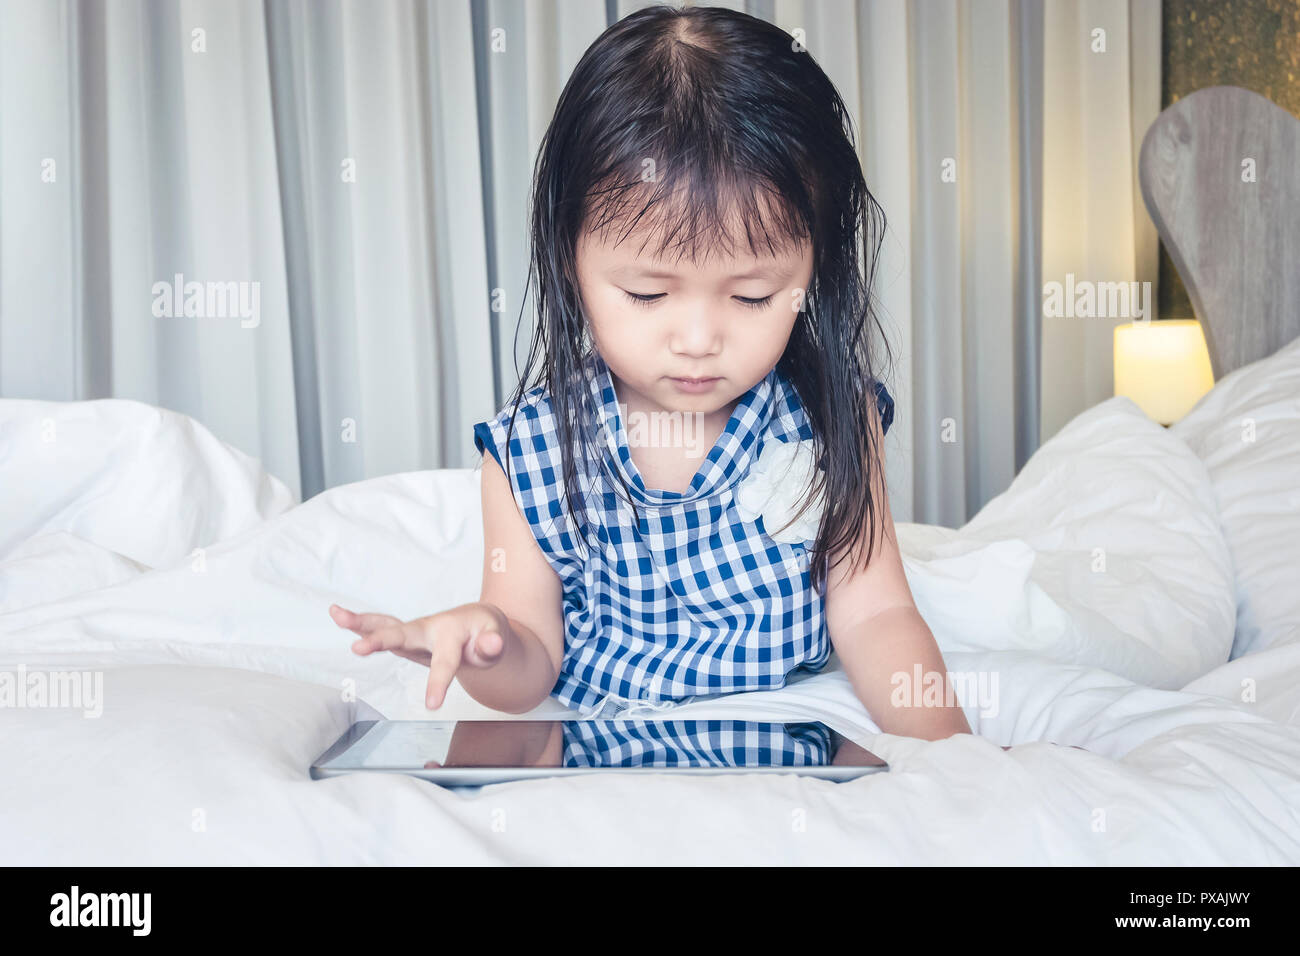 Kleines Mädchen auf dem Bett liegend mit Tablet glücklich lächelnd über das Internet ansehen und Spaß haben, in Beziehung mit Technologie Konzept Stockfoto